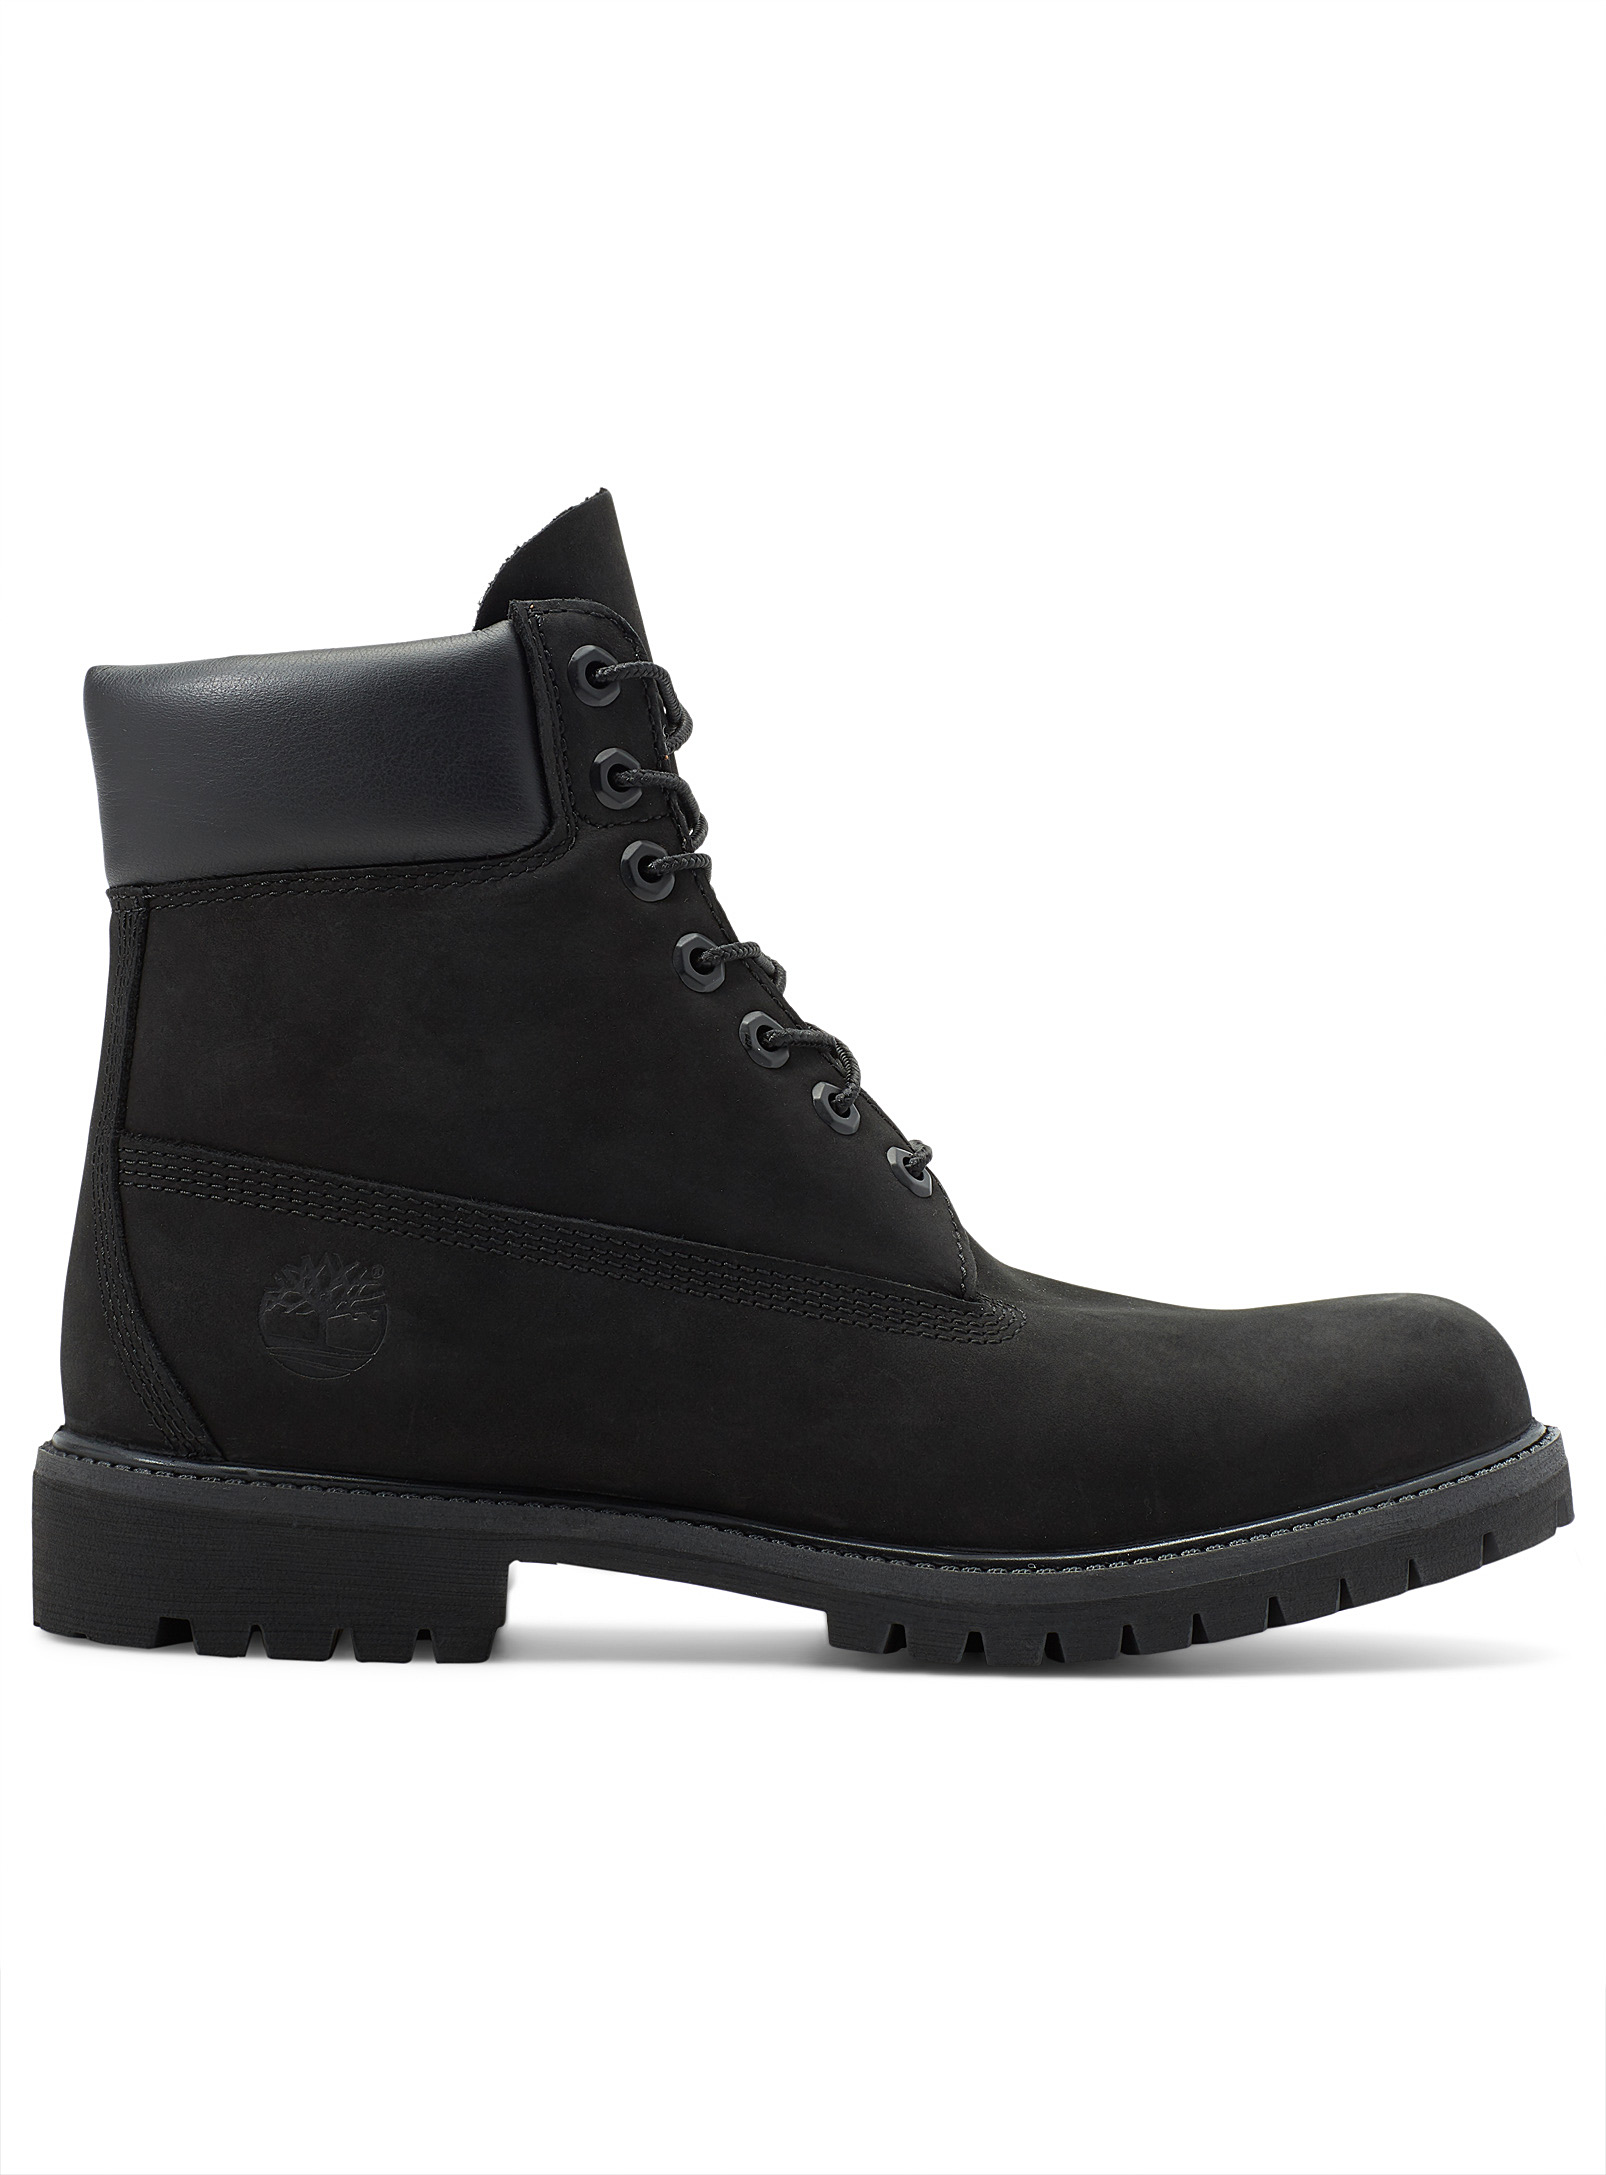 Timberland - Men's Premium 6-inch waterproof boots Men